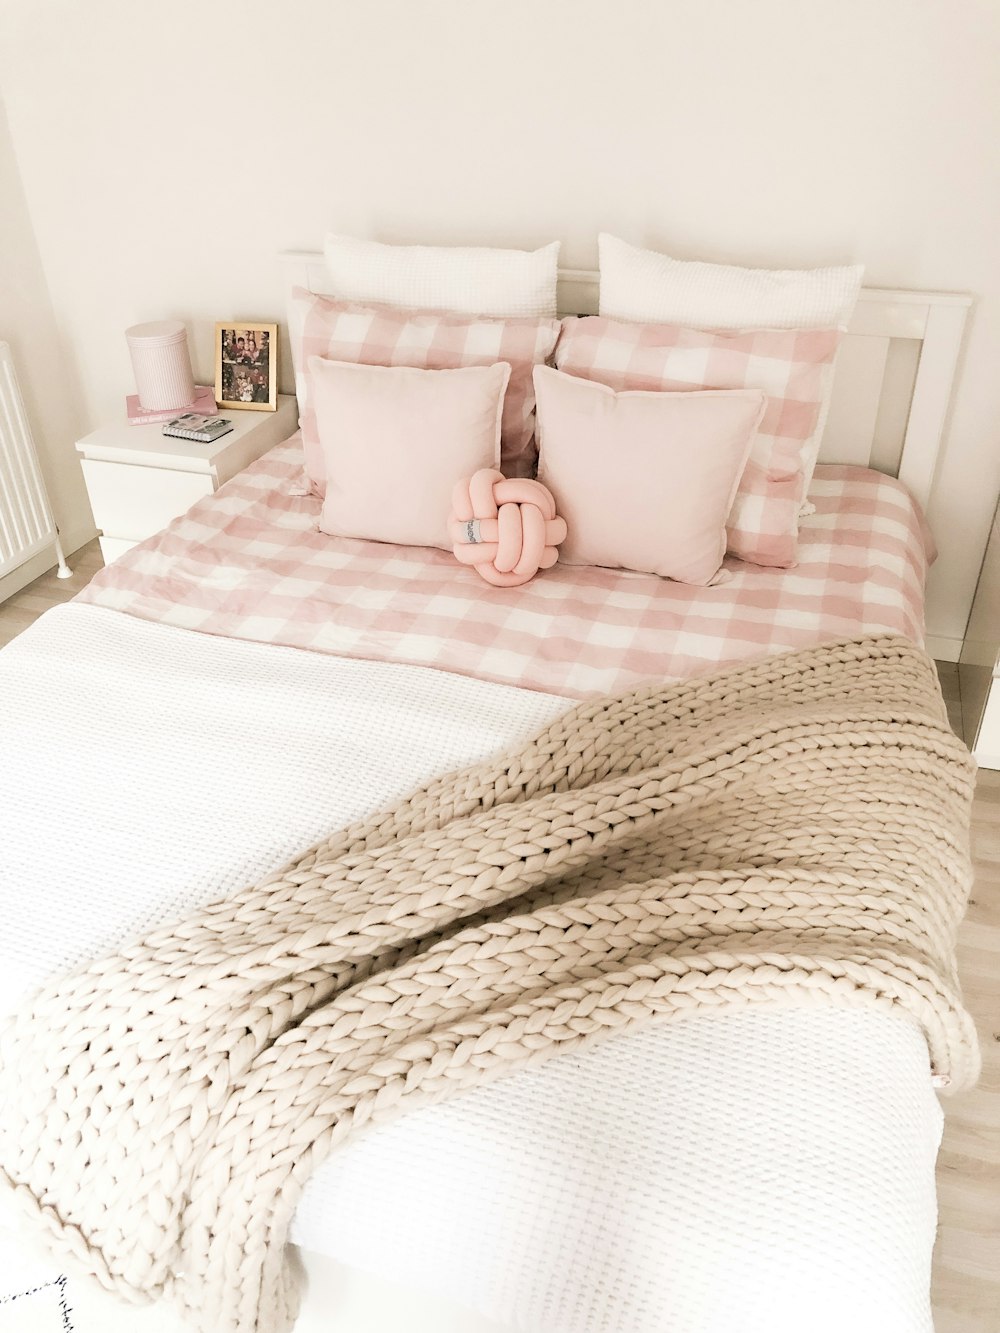 Coperta marrone lavorata a maglia sul letto con cuscini